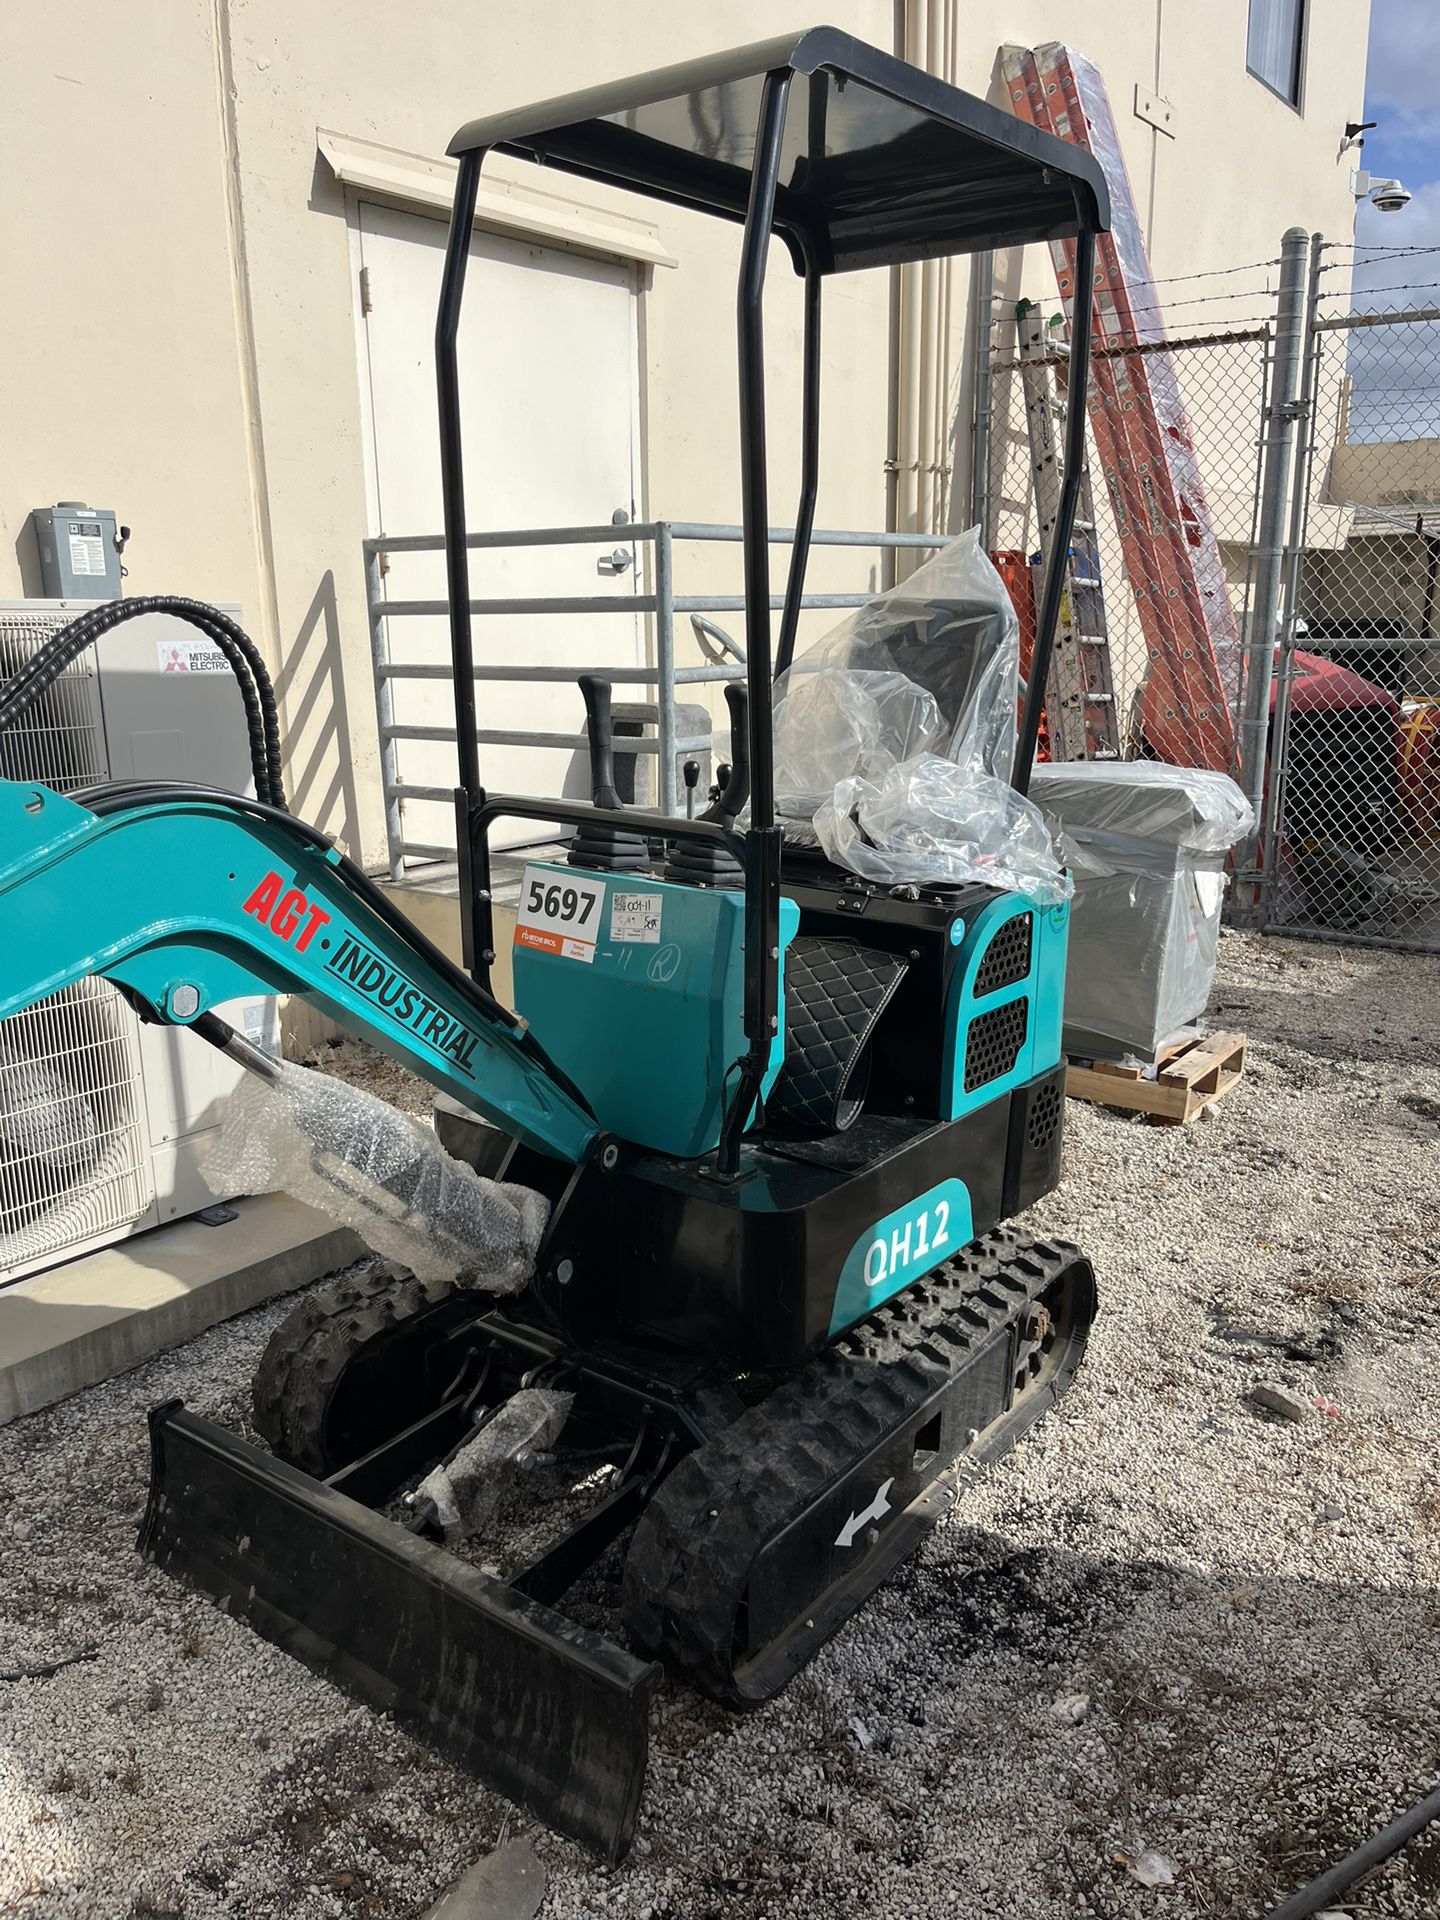 Mini Excavator AGT QH12